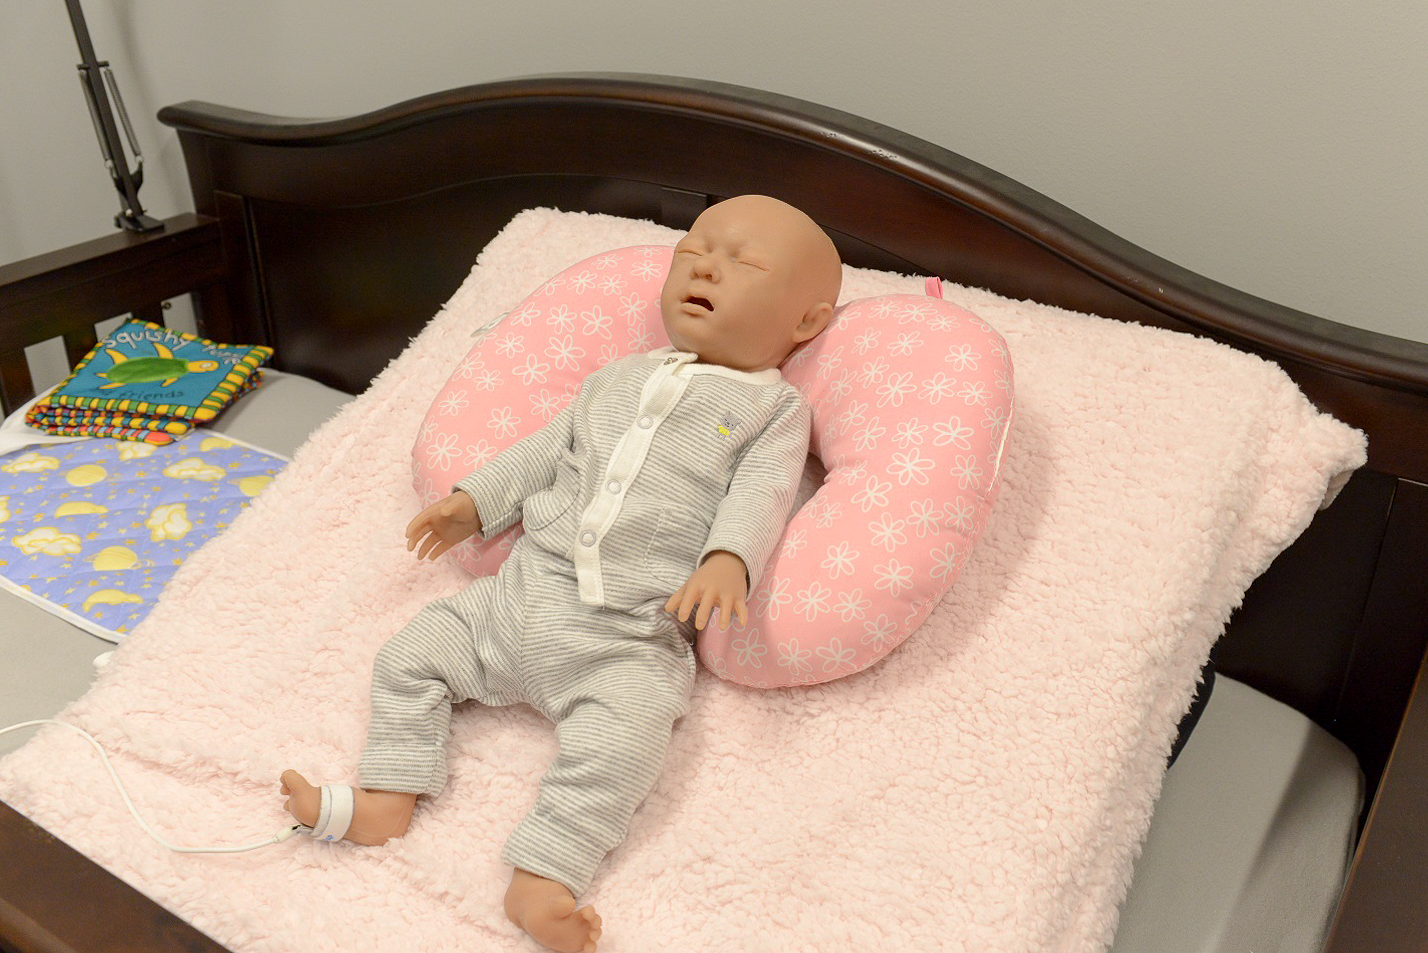 An infant high-fideilty simulator